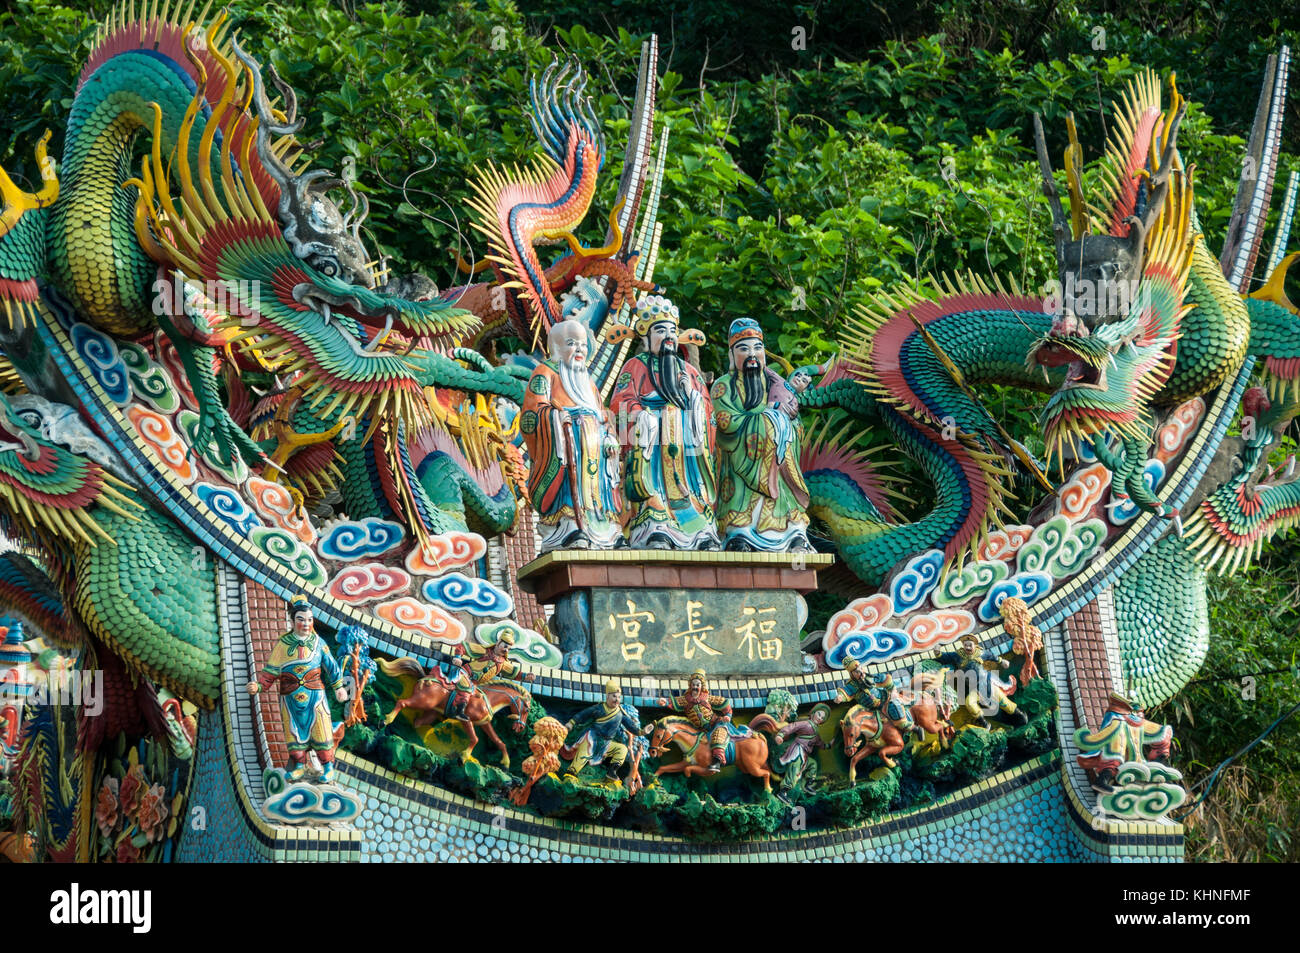 Les gens de Taïwan adorent divers dieux. C'est un petit autel trouvé près d'un port de pêche où les pêcheurs cherchent une protection. Banque D'Images